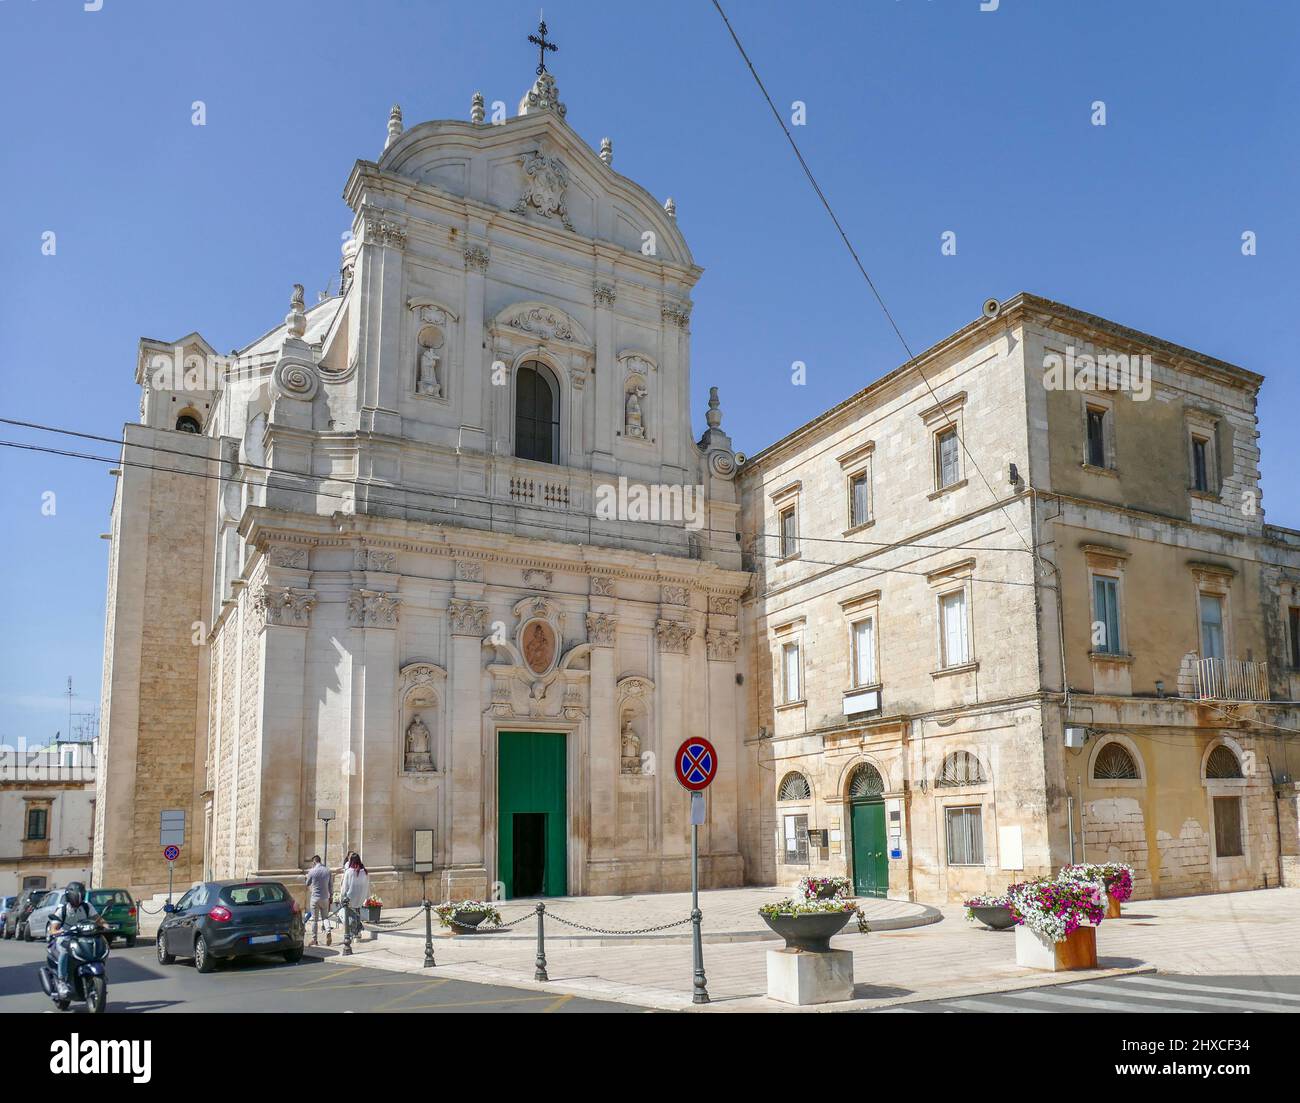 Church Parrocchiale della Madonna in Martina Franca, a town in Apulia, Southern Italy Stock Photo